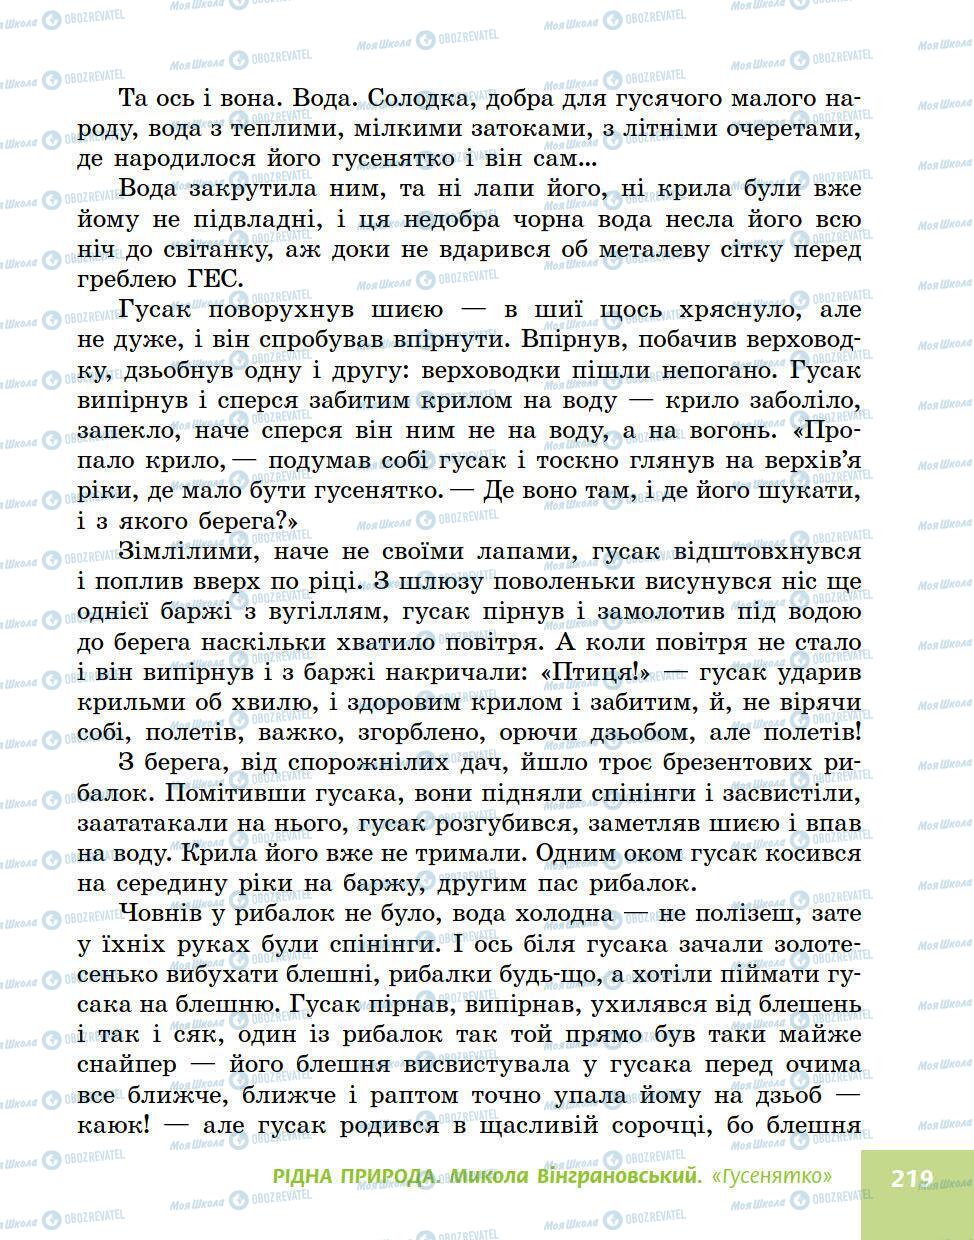 Підручники Українська література 5 клас сторінка 219